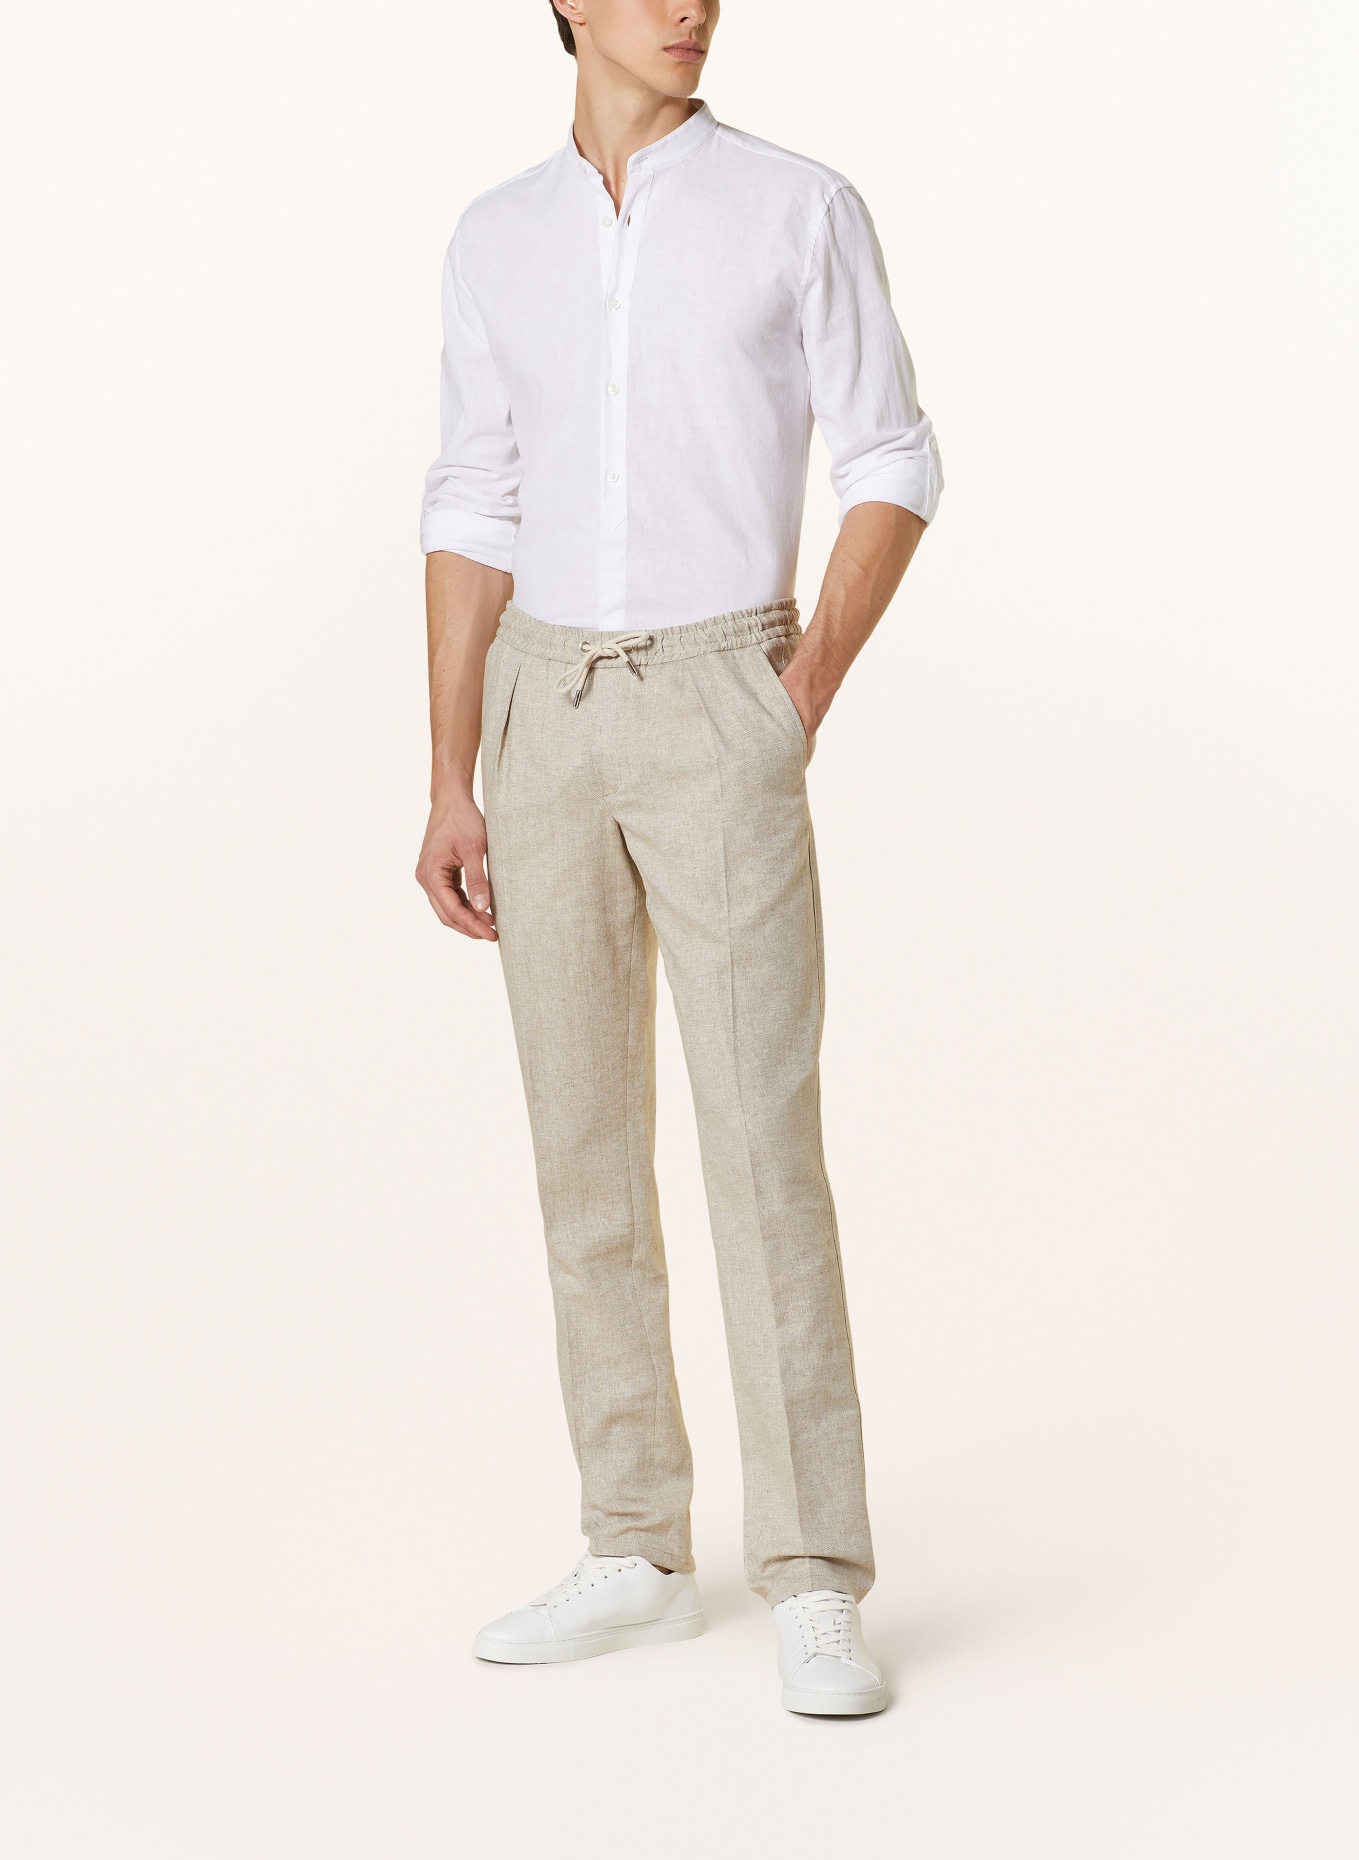 STRELLSON Hemd CONELL Comfort Fit mit Leinen und Stehkragen, Farbe: WEISS (Bild 2)